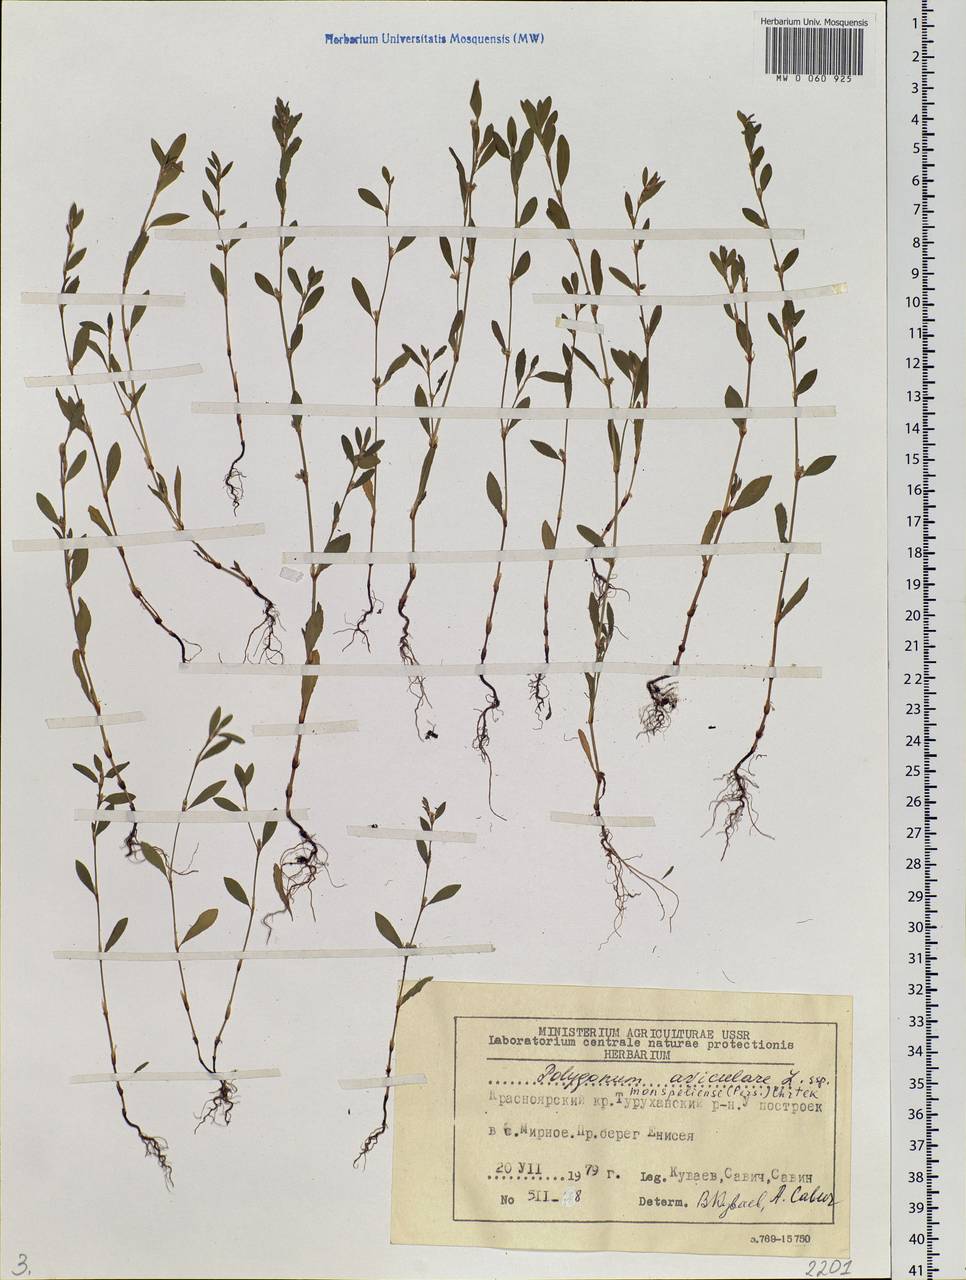 Polygonum aviculare L., Siberia, Central Siberia (S3) (Russia)